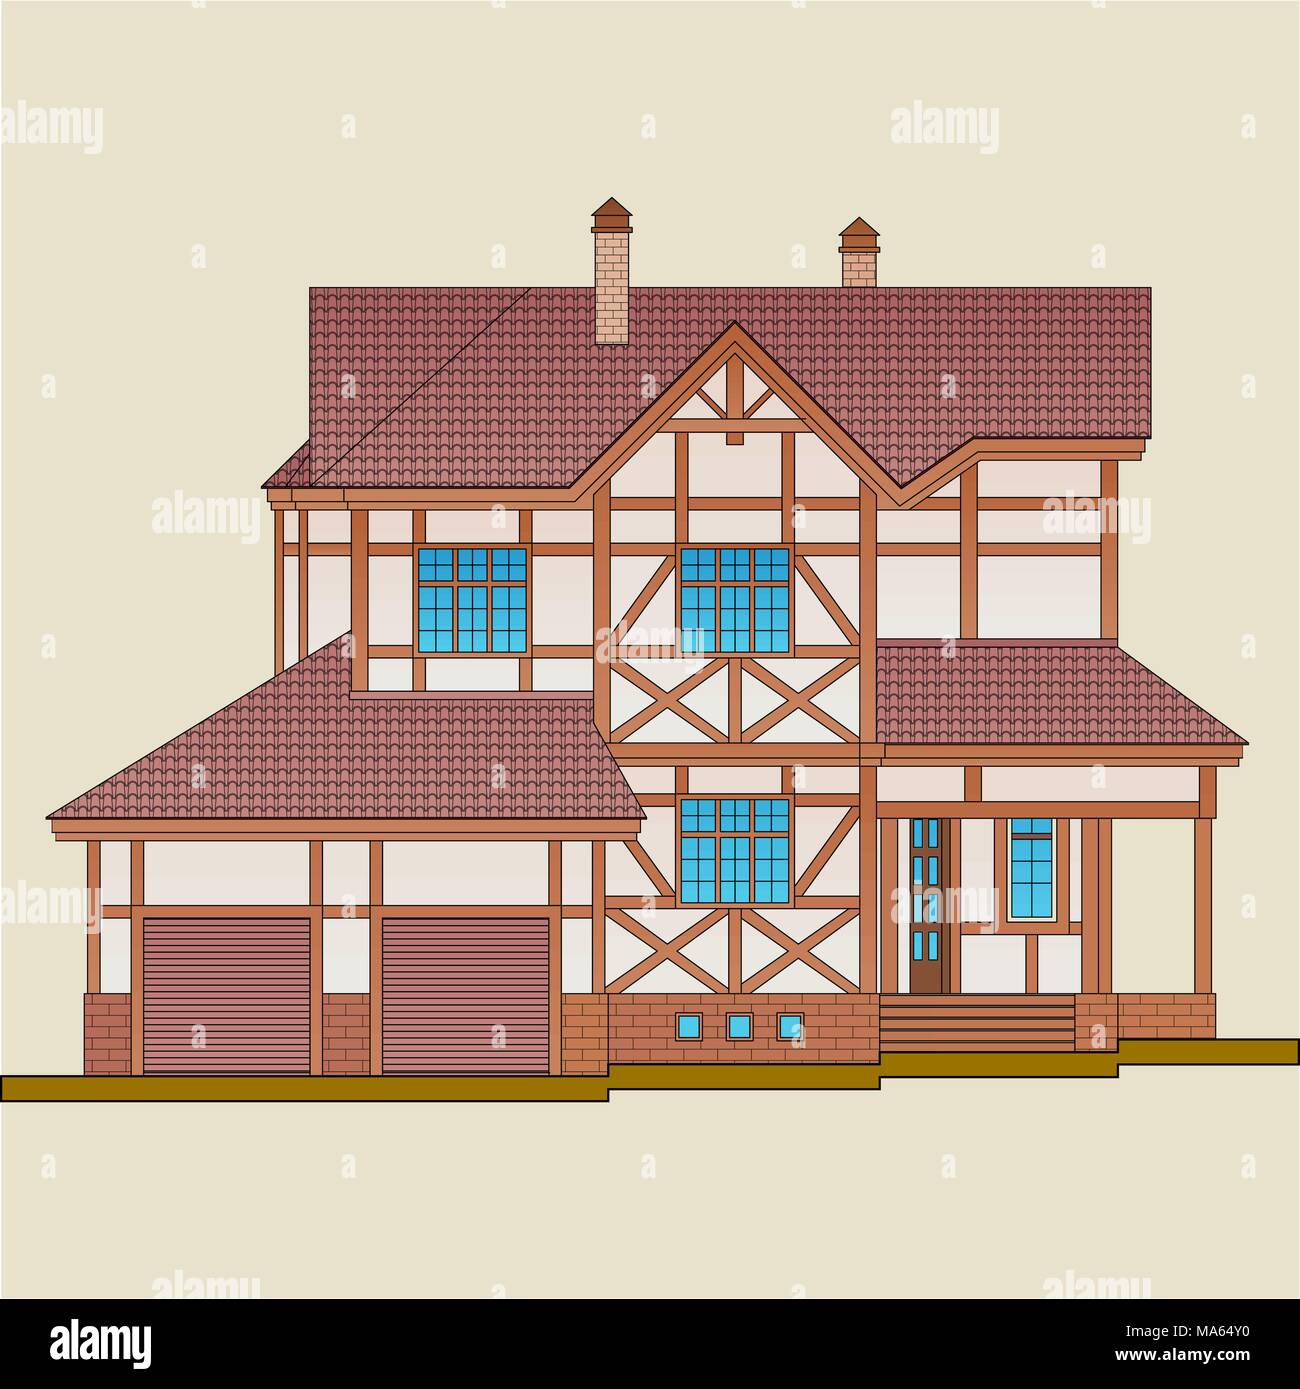 La maison est construite en bois naturel et plaqué brique. 'Post-et-beam' construction, comme un style d'architecture d'un immeuble. Illustration de Vecteur